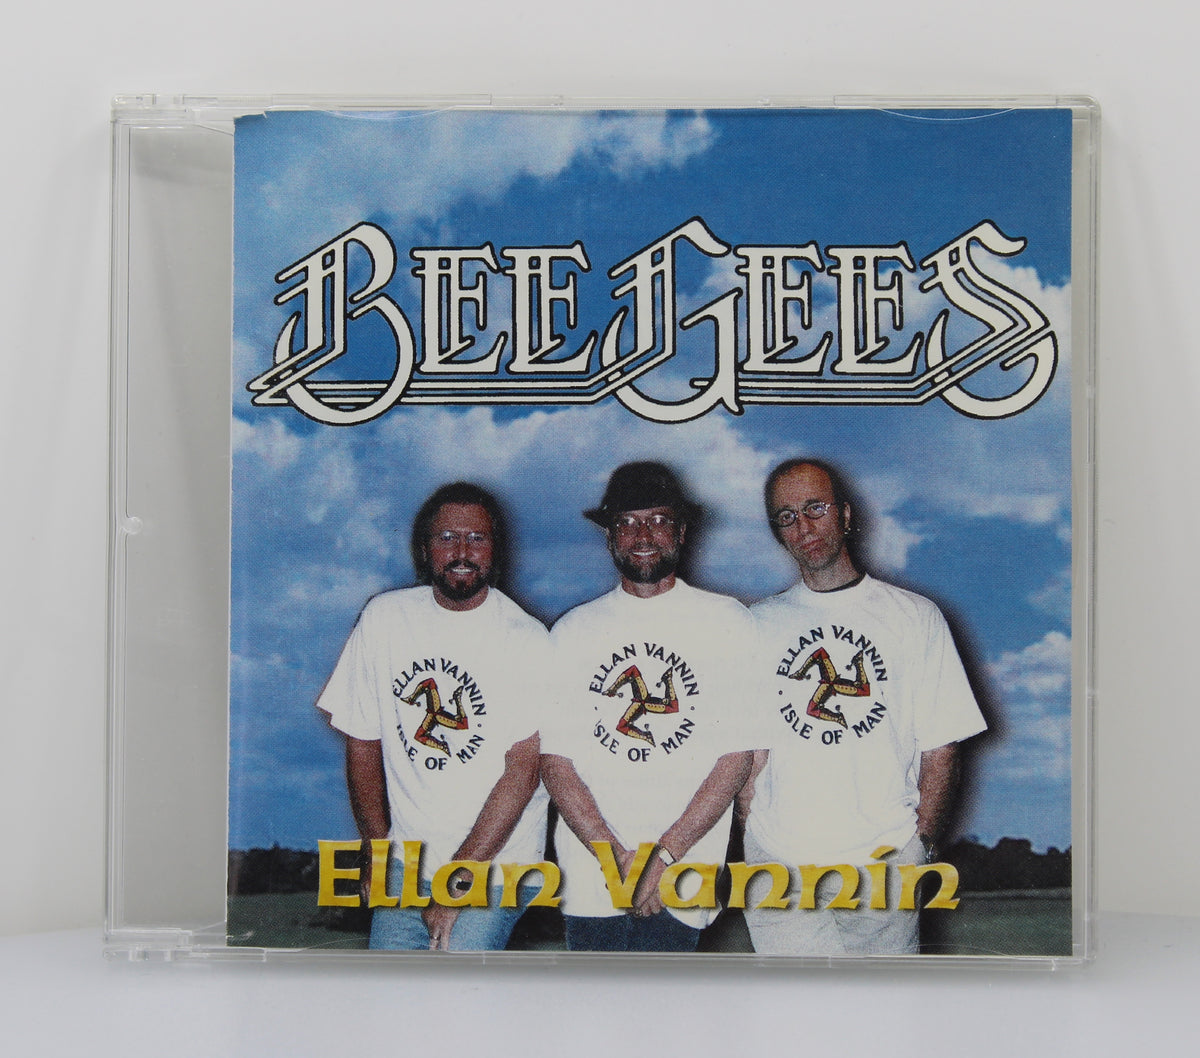 Bee Gees - Ellan Vannin, CD Single, Limited Edition, UK 1998